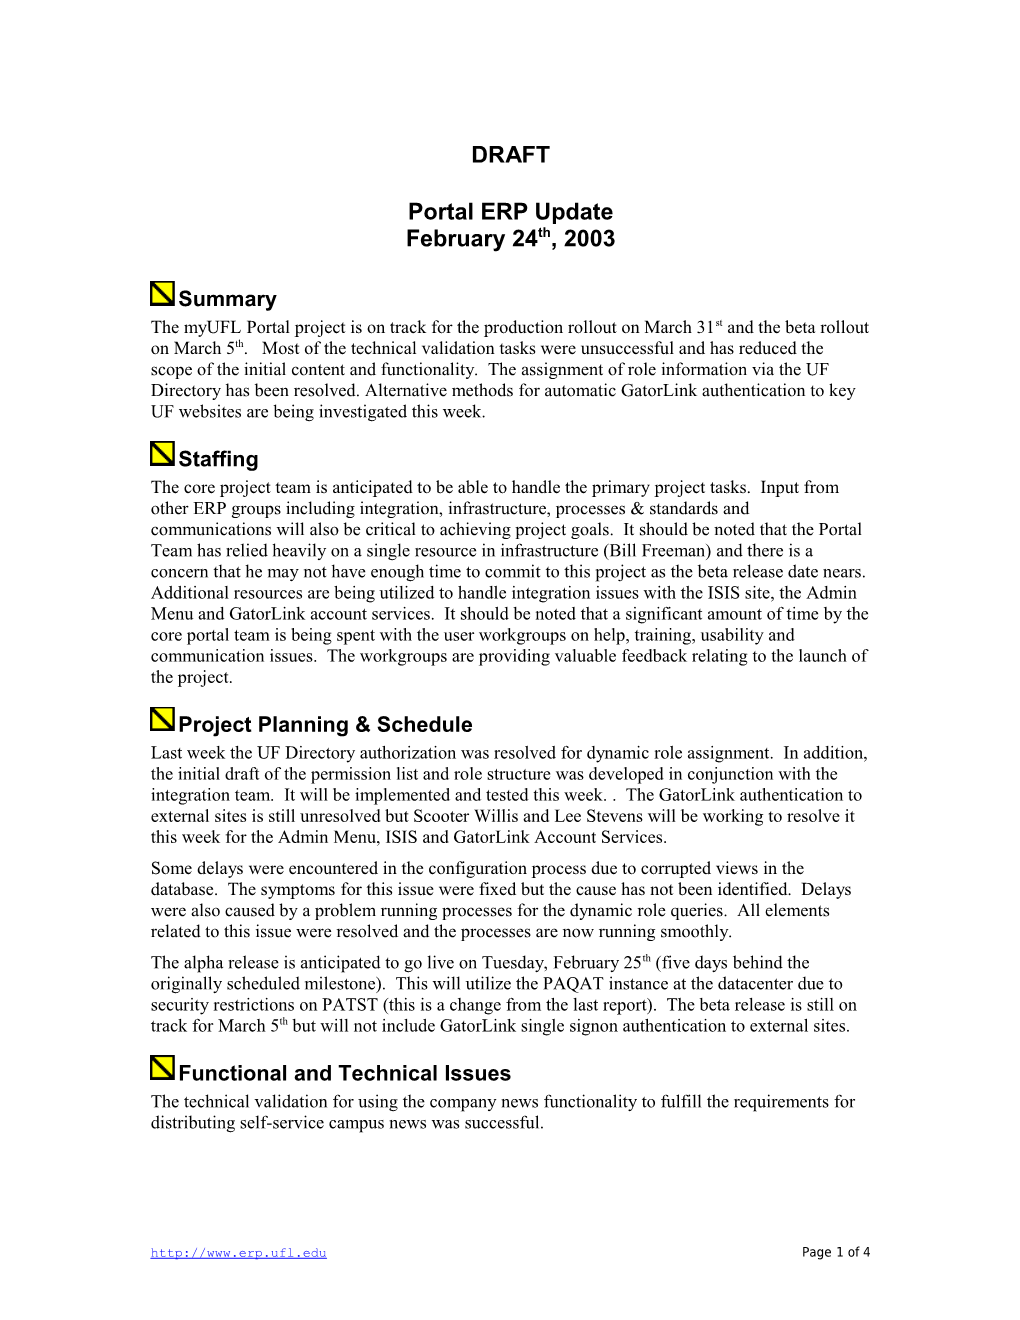 Portal ERP Update February 24Th, 2003